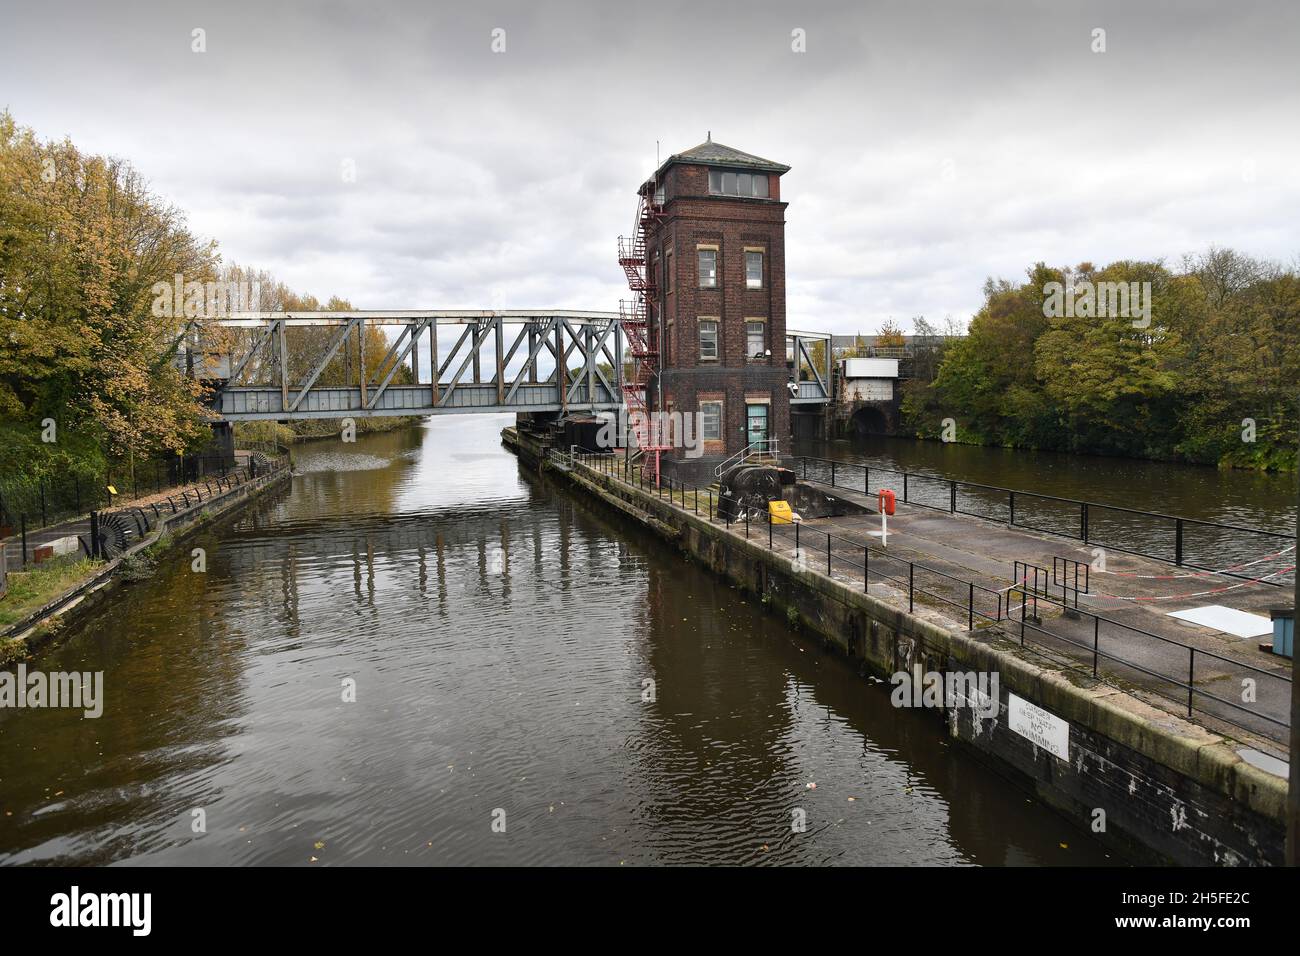 El Acueducto Barton Swing Un acueducto navegable movible que lleva el Canal Bridgewater a través del Canal Manchester Ship en Barton upon Irwell, Grande Foto de stock